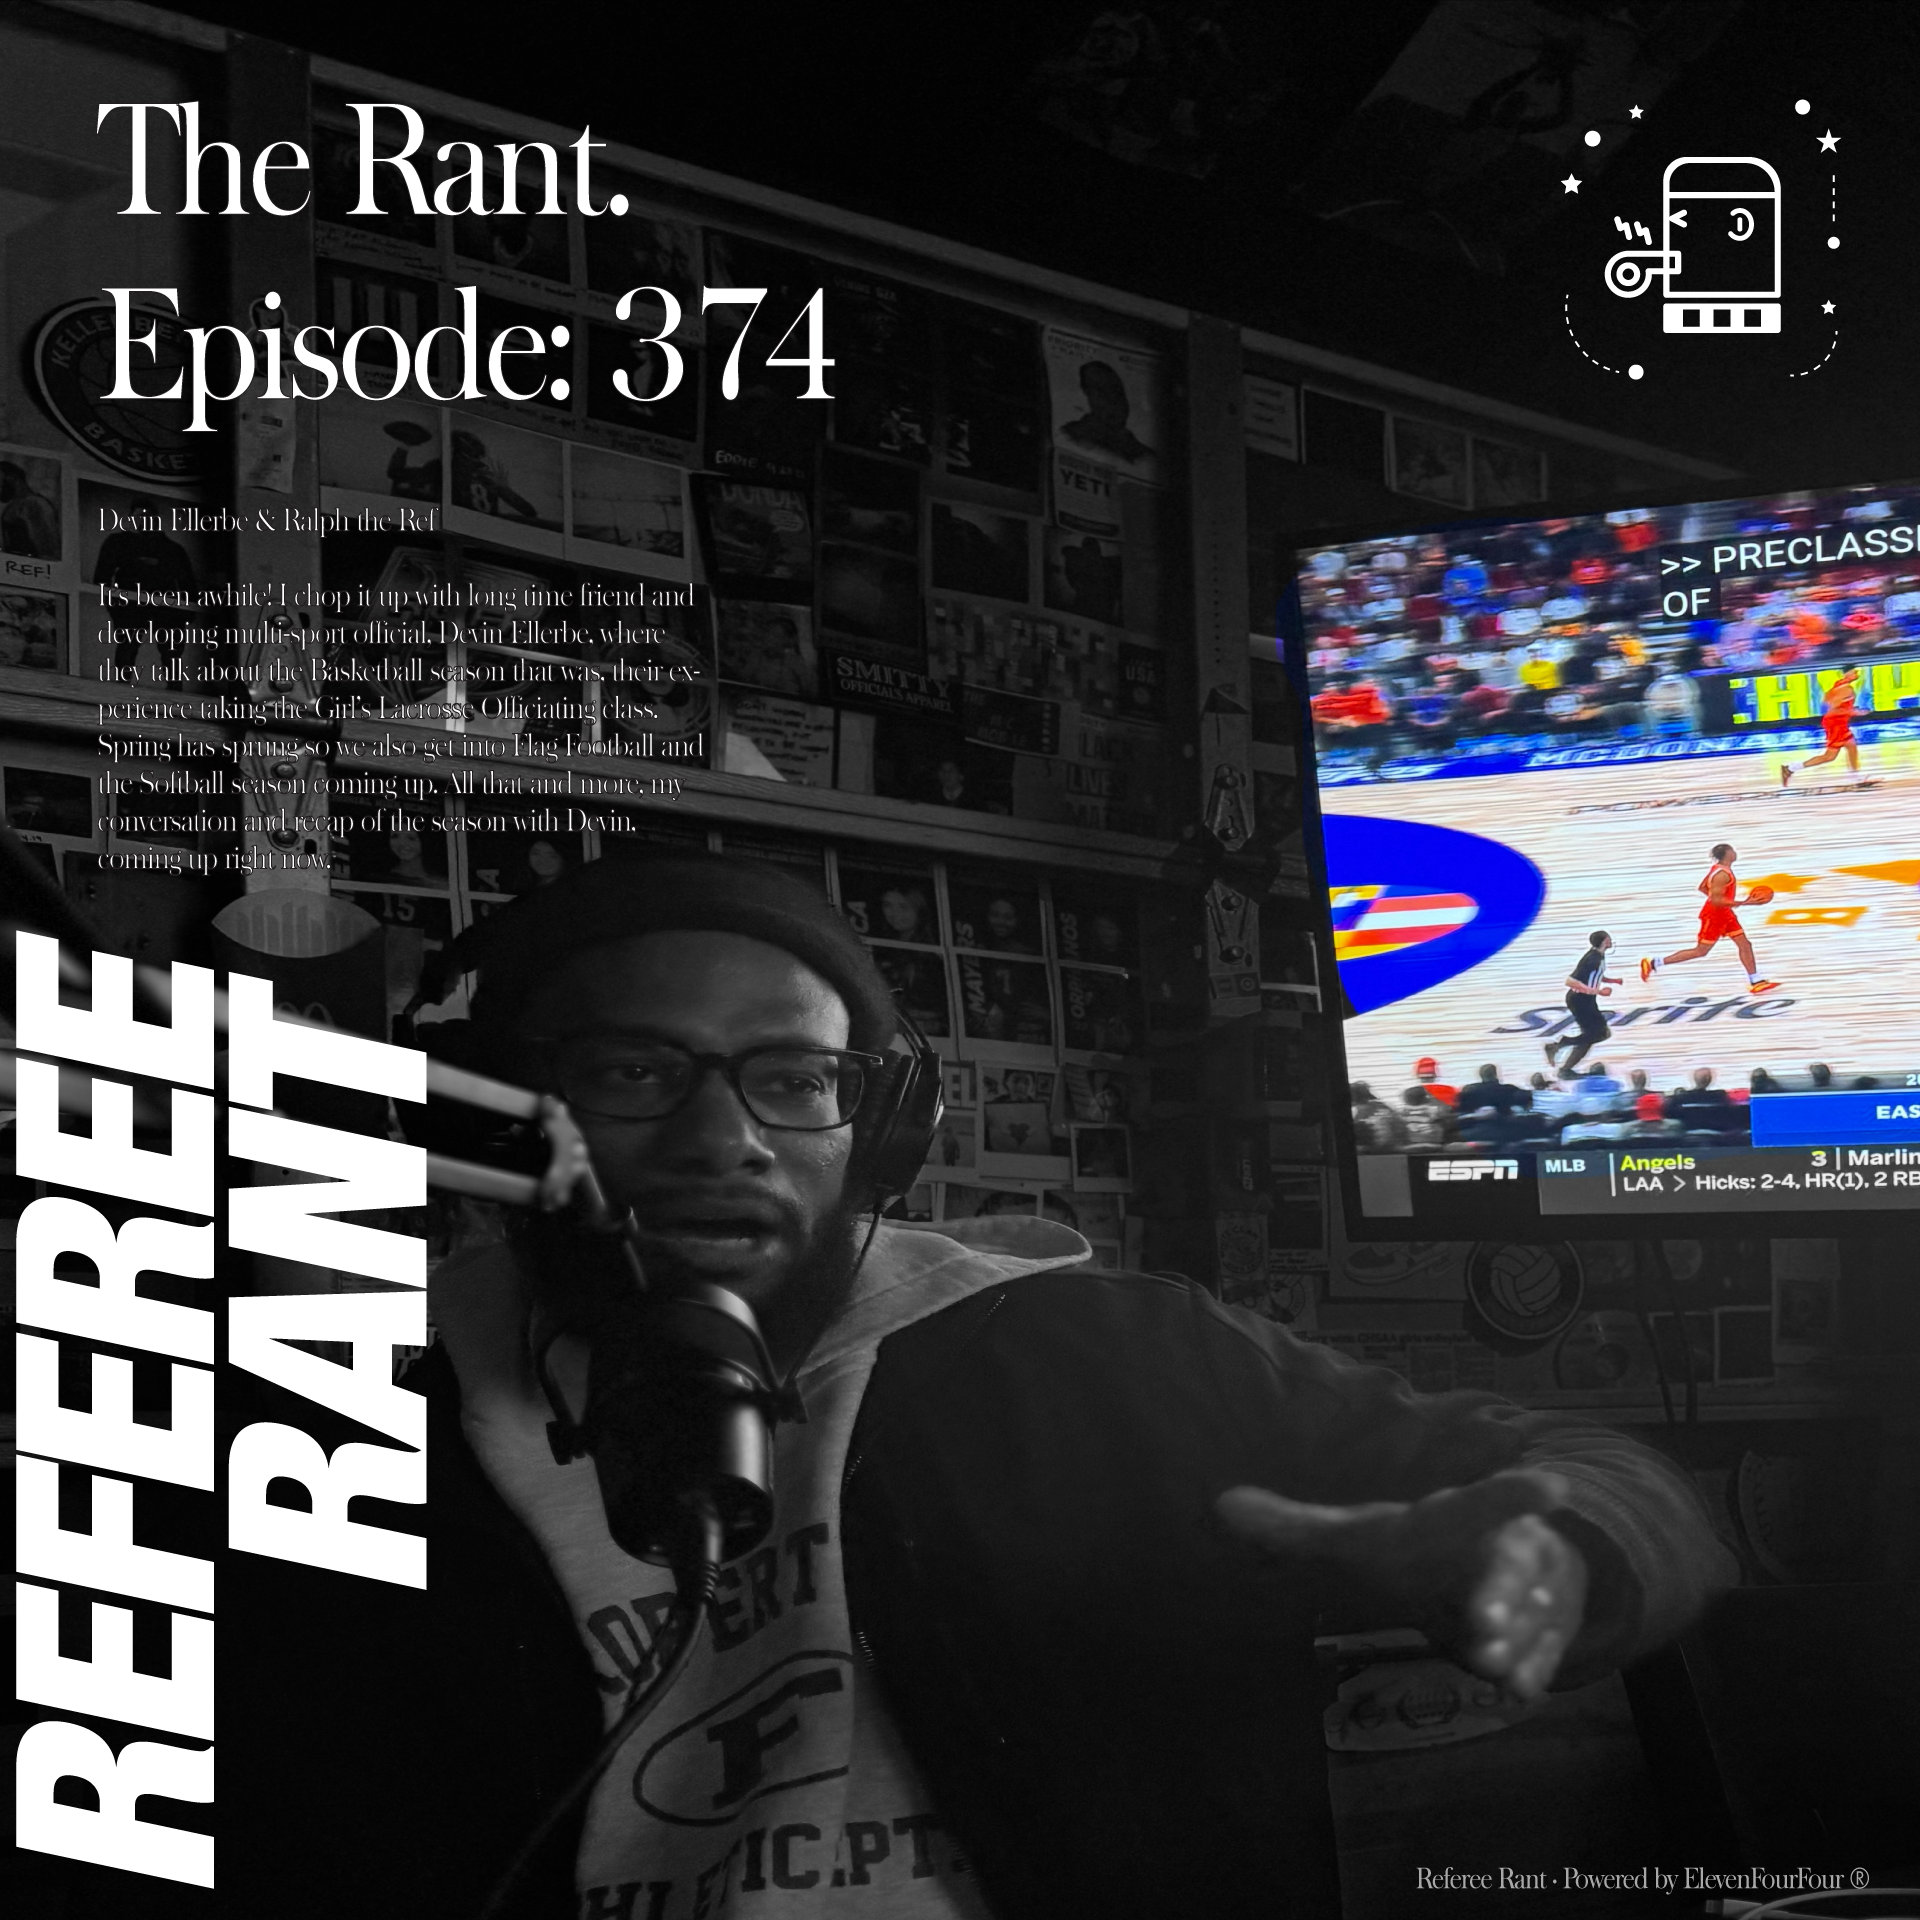 Episode 374, The Rant: Devin Ellerbe & Ralph the Ref